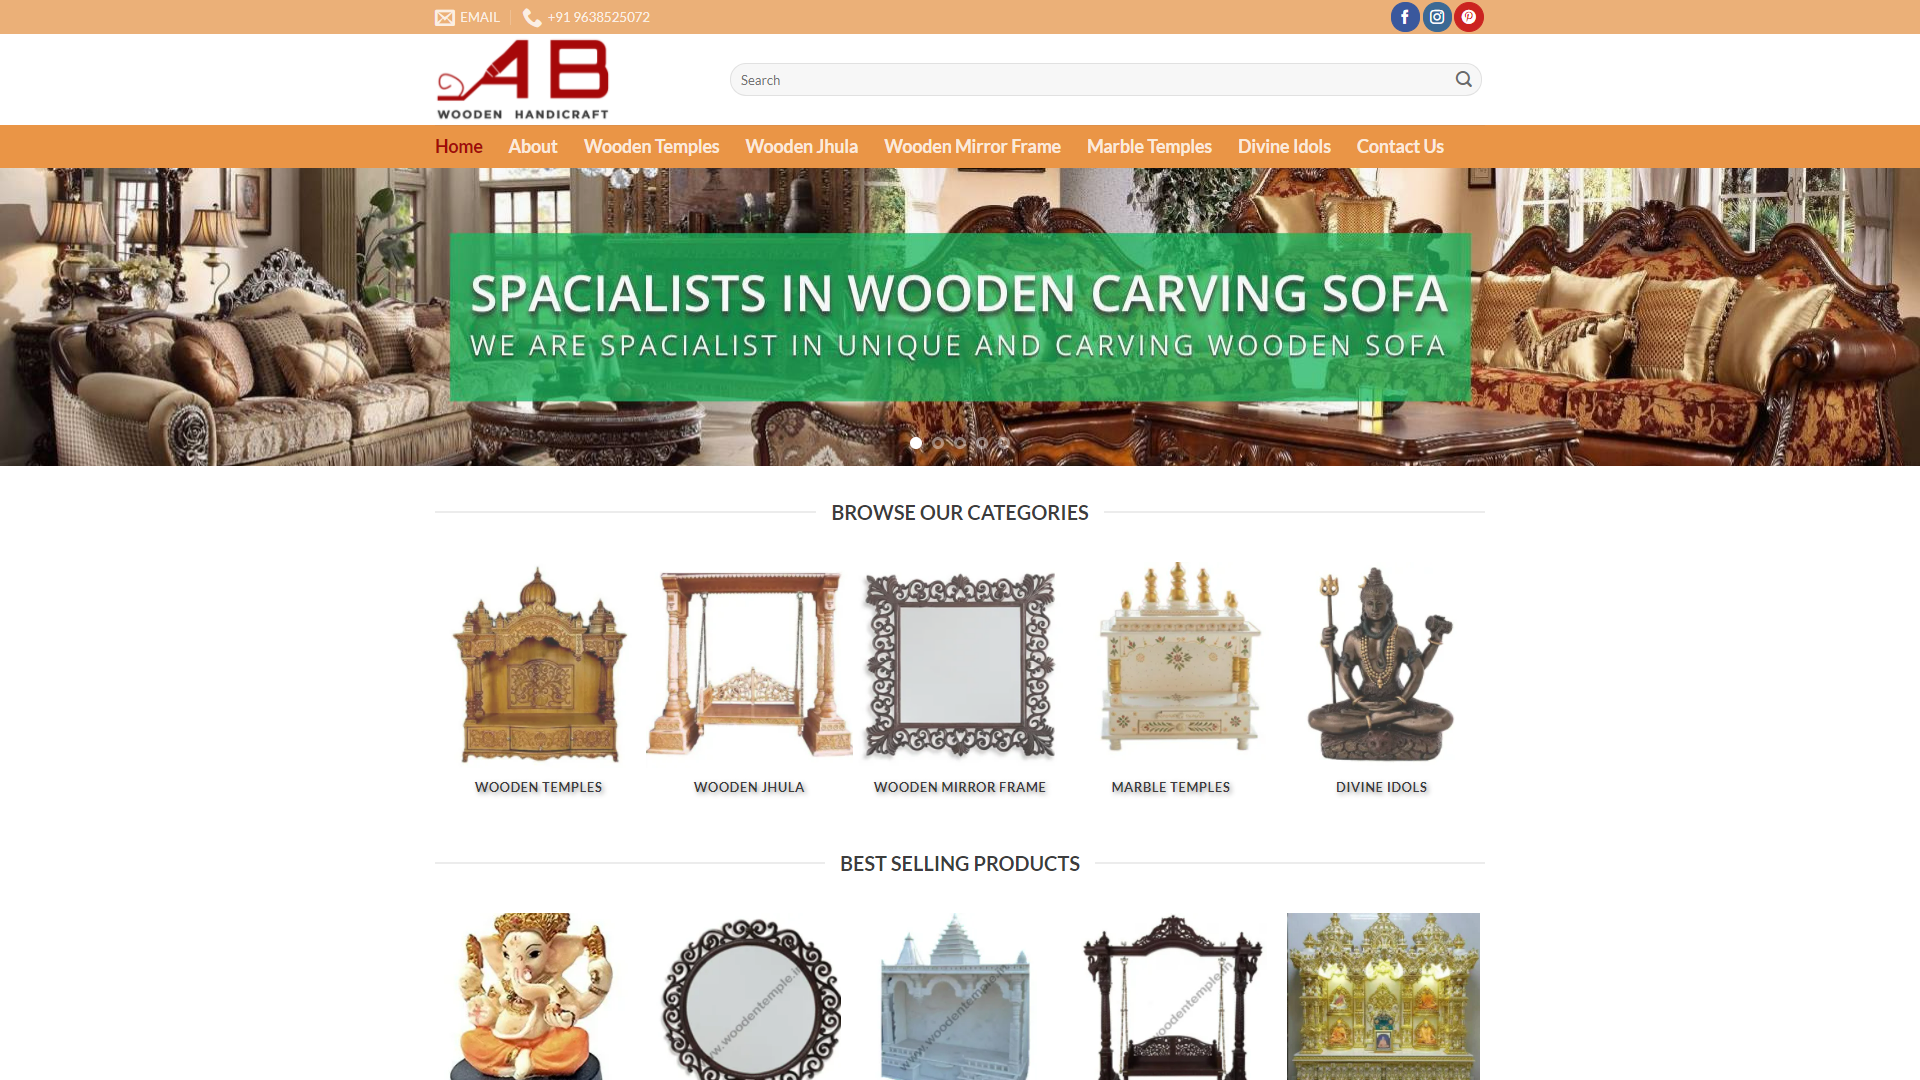 AB Wooden Handicraft